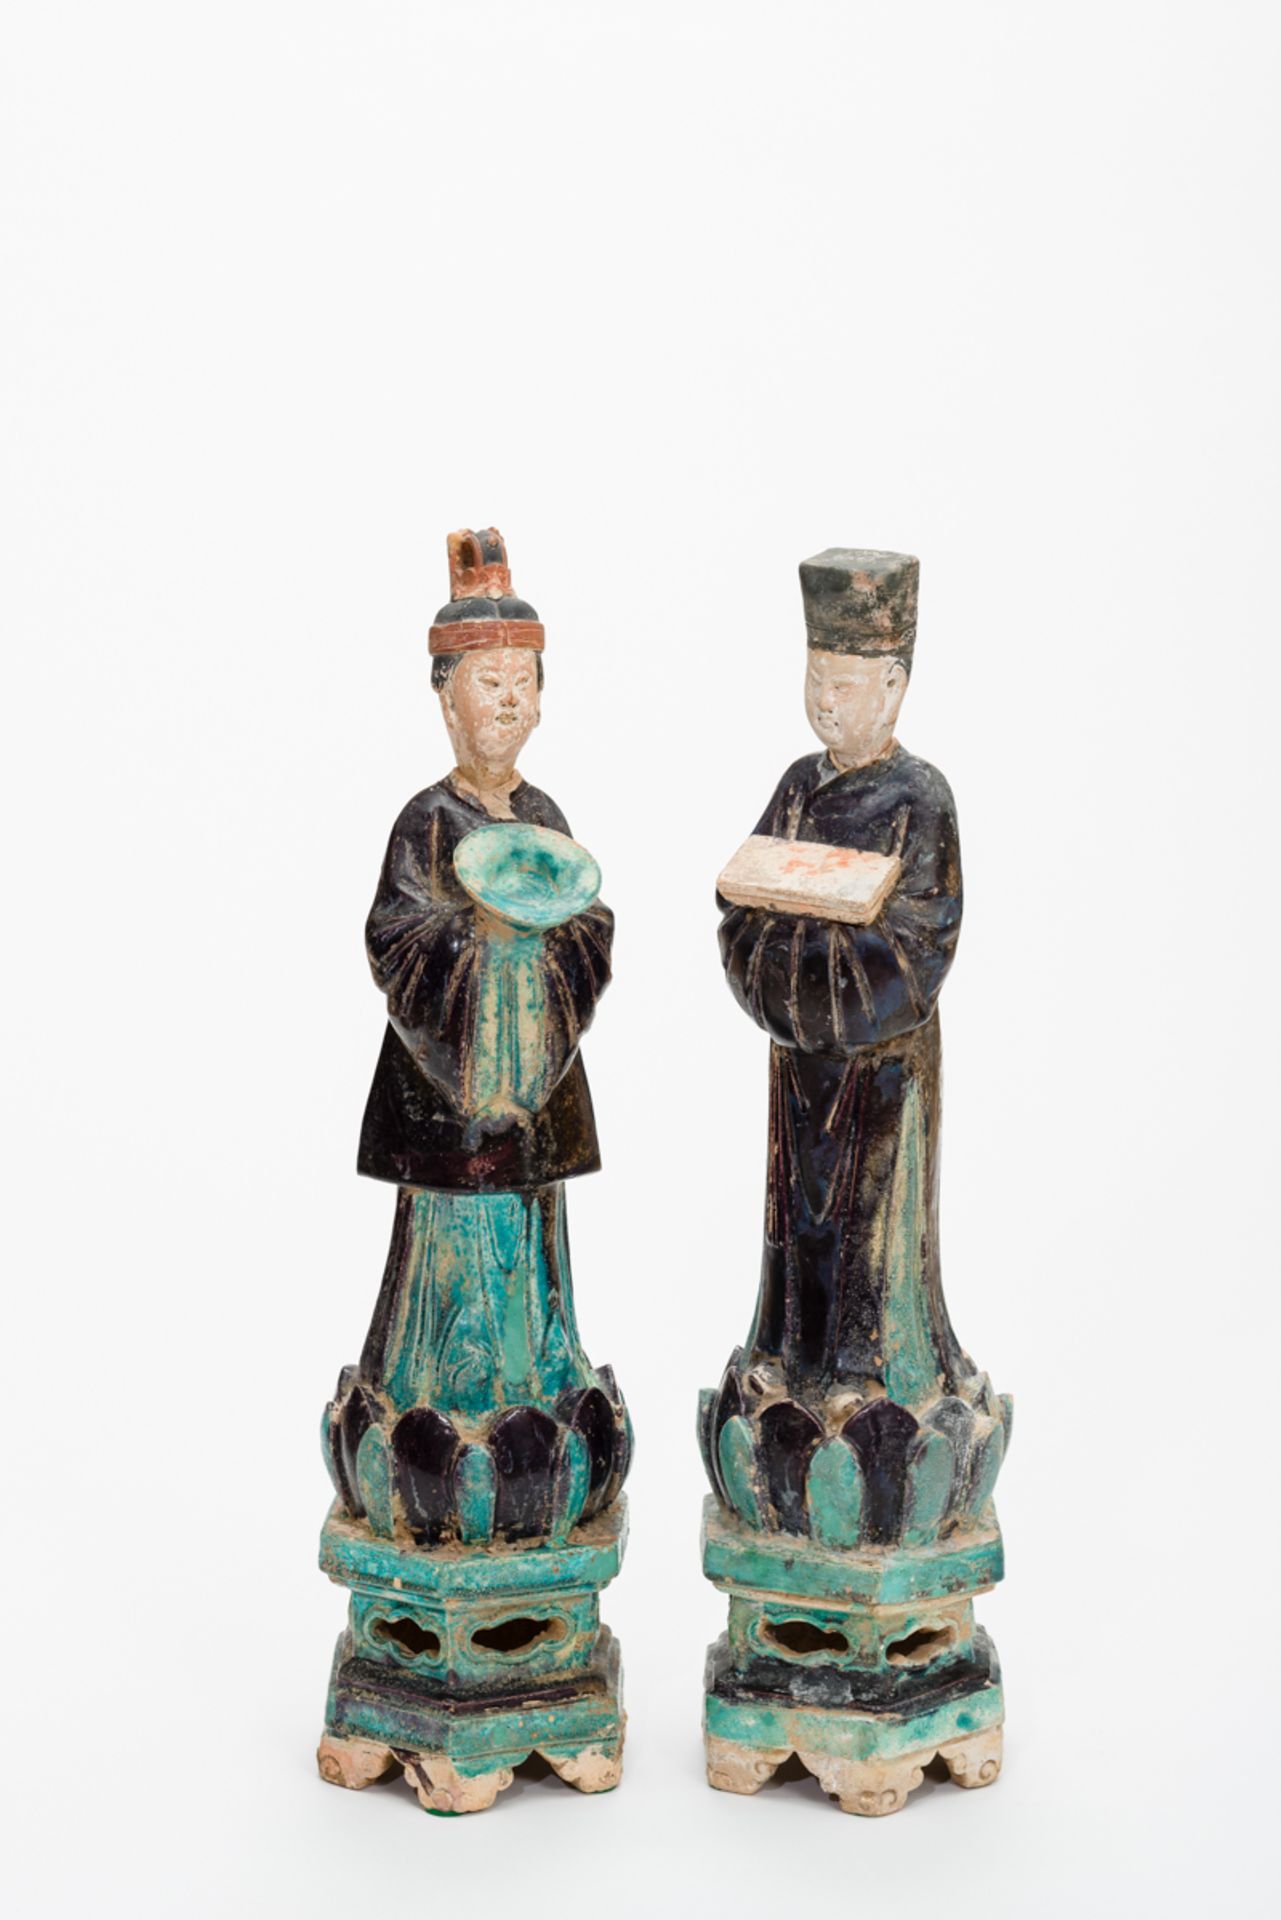 DAME UND HERR AUS EINEM GROSSEN GEFOLGETürkis und schwarz glasierte Keramik. China, Ming-Dynastie,